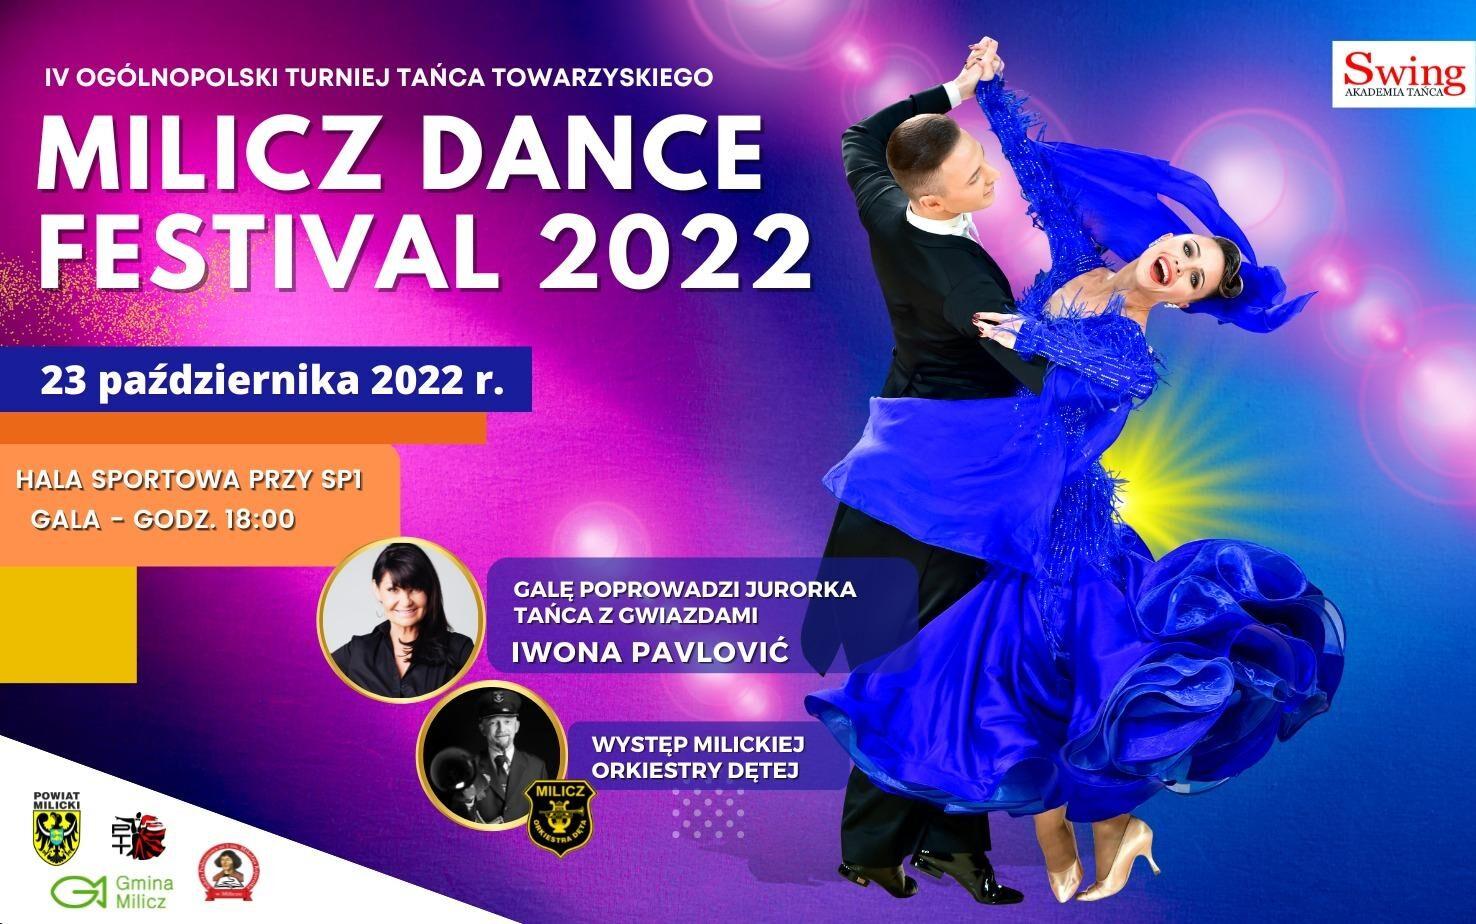 Milicz Dance Festival 2022. Sprawdź szczegóły wydarzenia